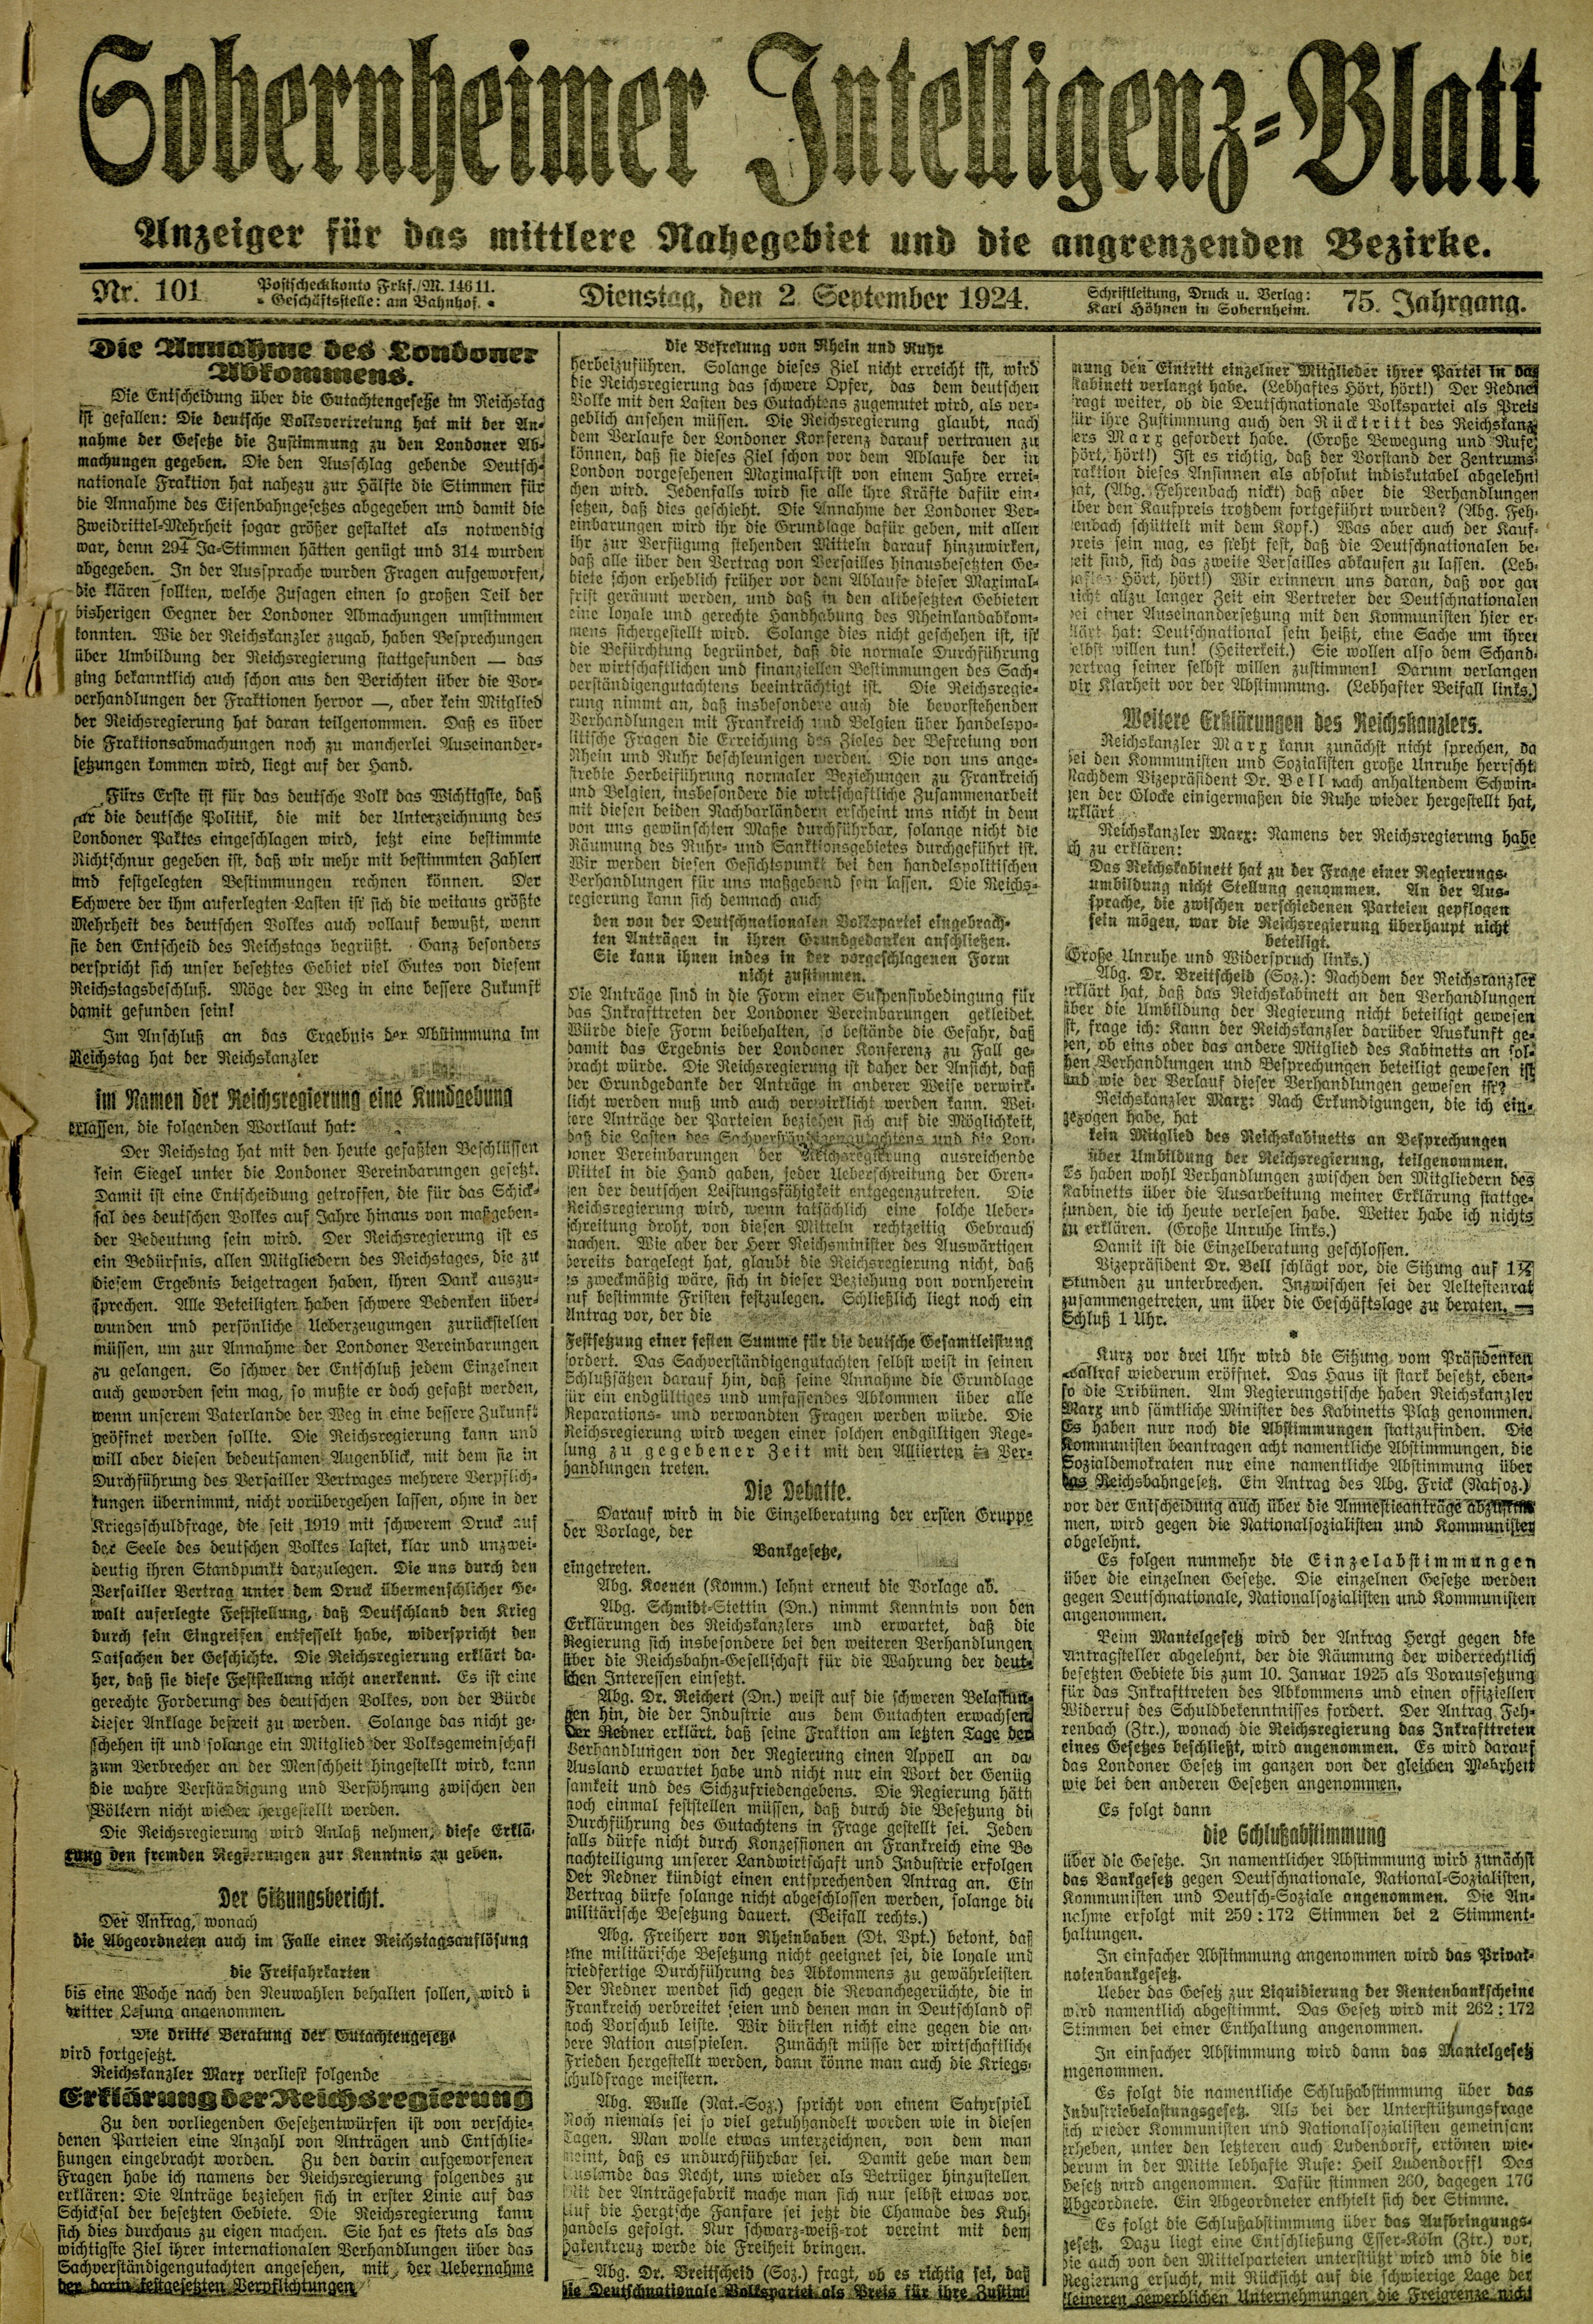 Zeitung: Sobernheimer Intelligenzblatt; September 1924, Jg. 73 Nr. 101 (Heimatmuseum Bad Sobernheim CC BY-NC-SA)